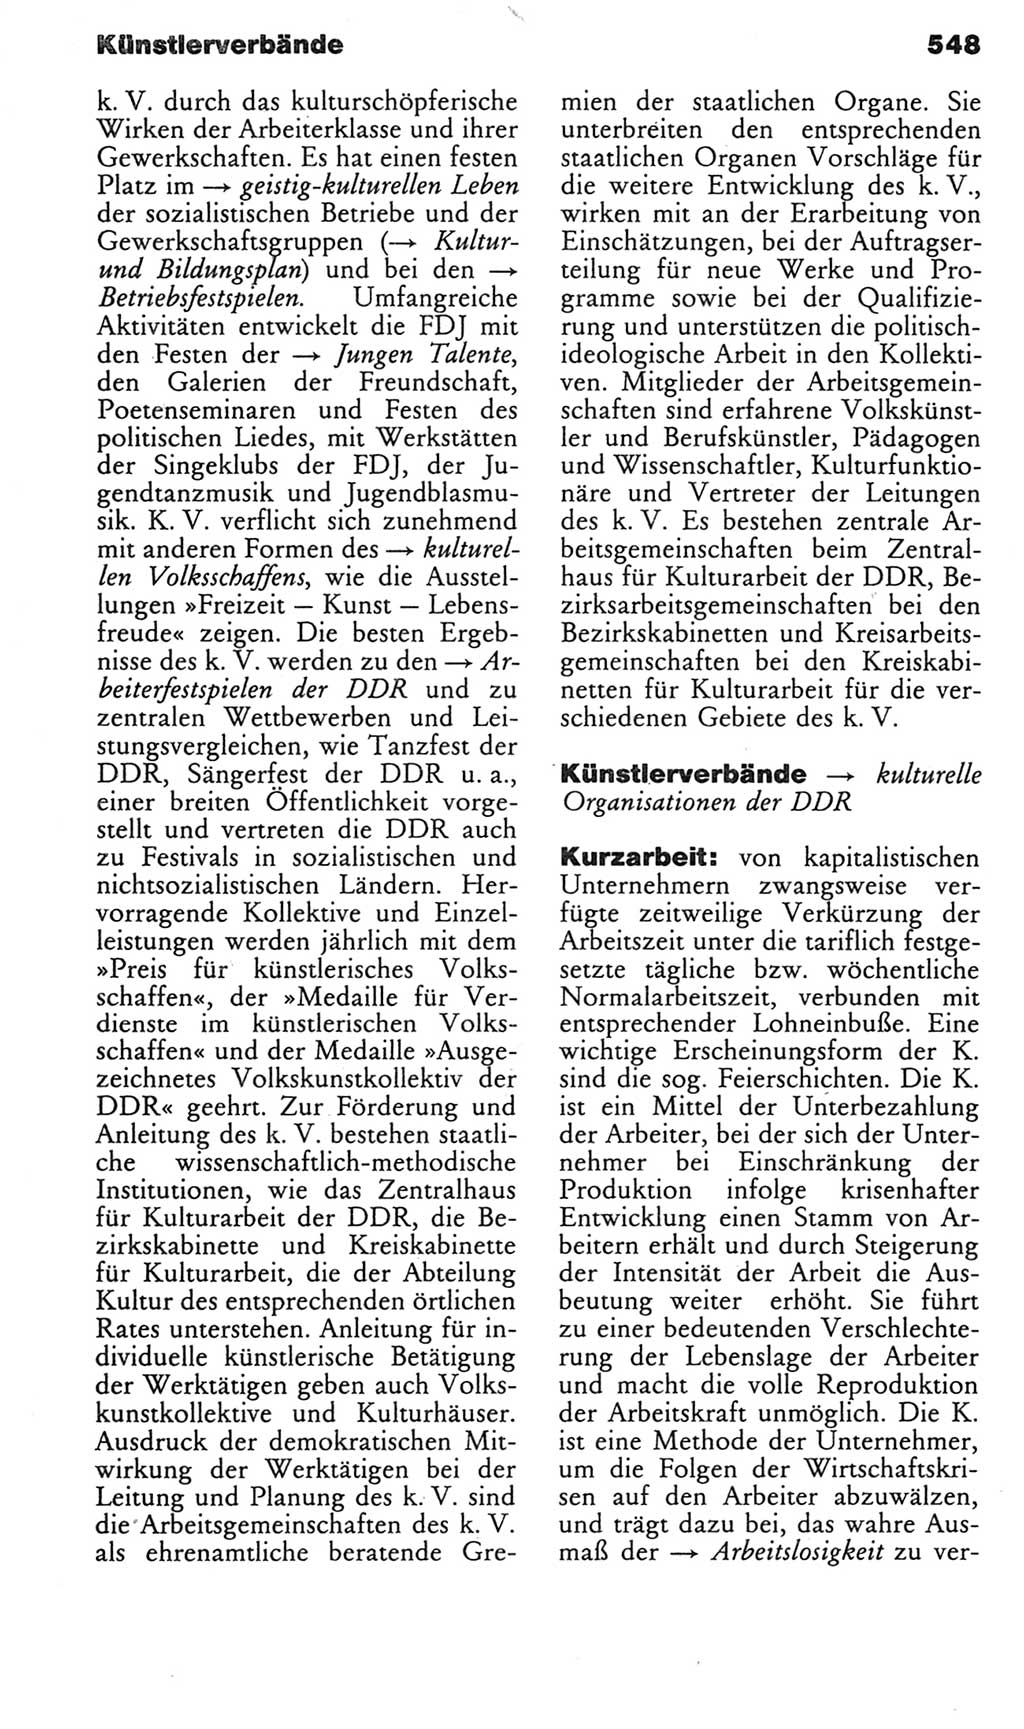 Kleines politisches Wörterbuch [Deutsche Demokratische Republik (DDR)] 1985, Seite 548 (Kl. pol. Wb. DDR 1985, S. 548)